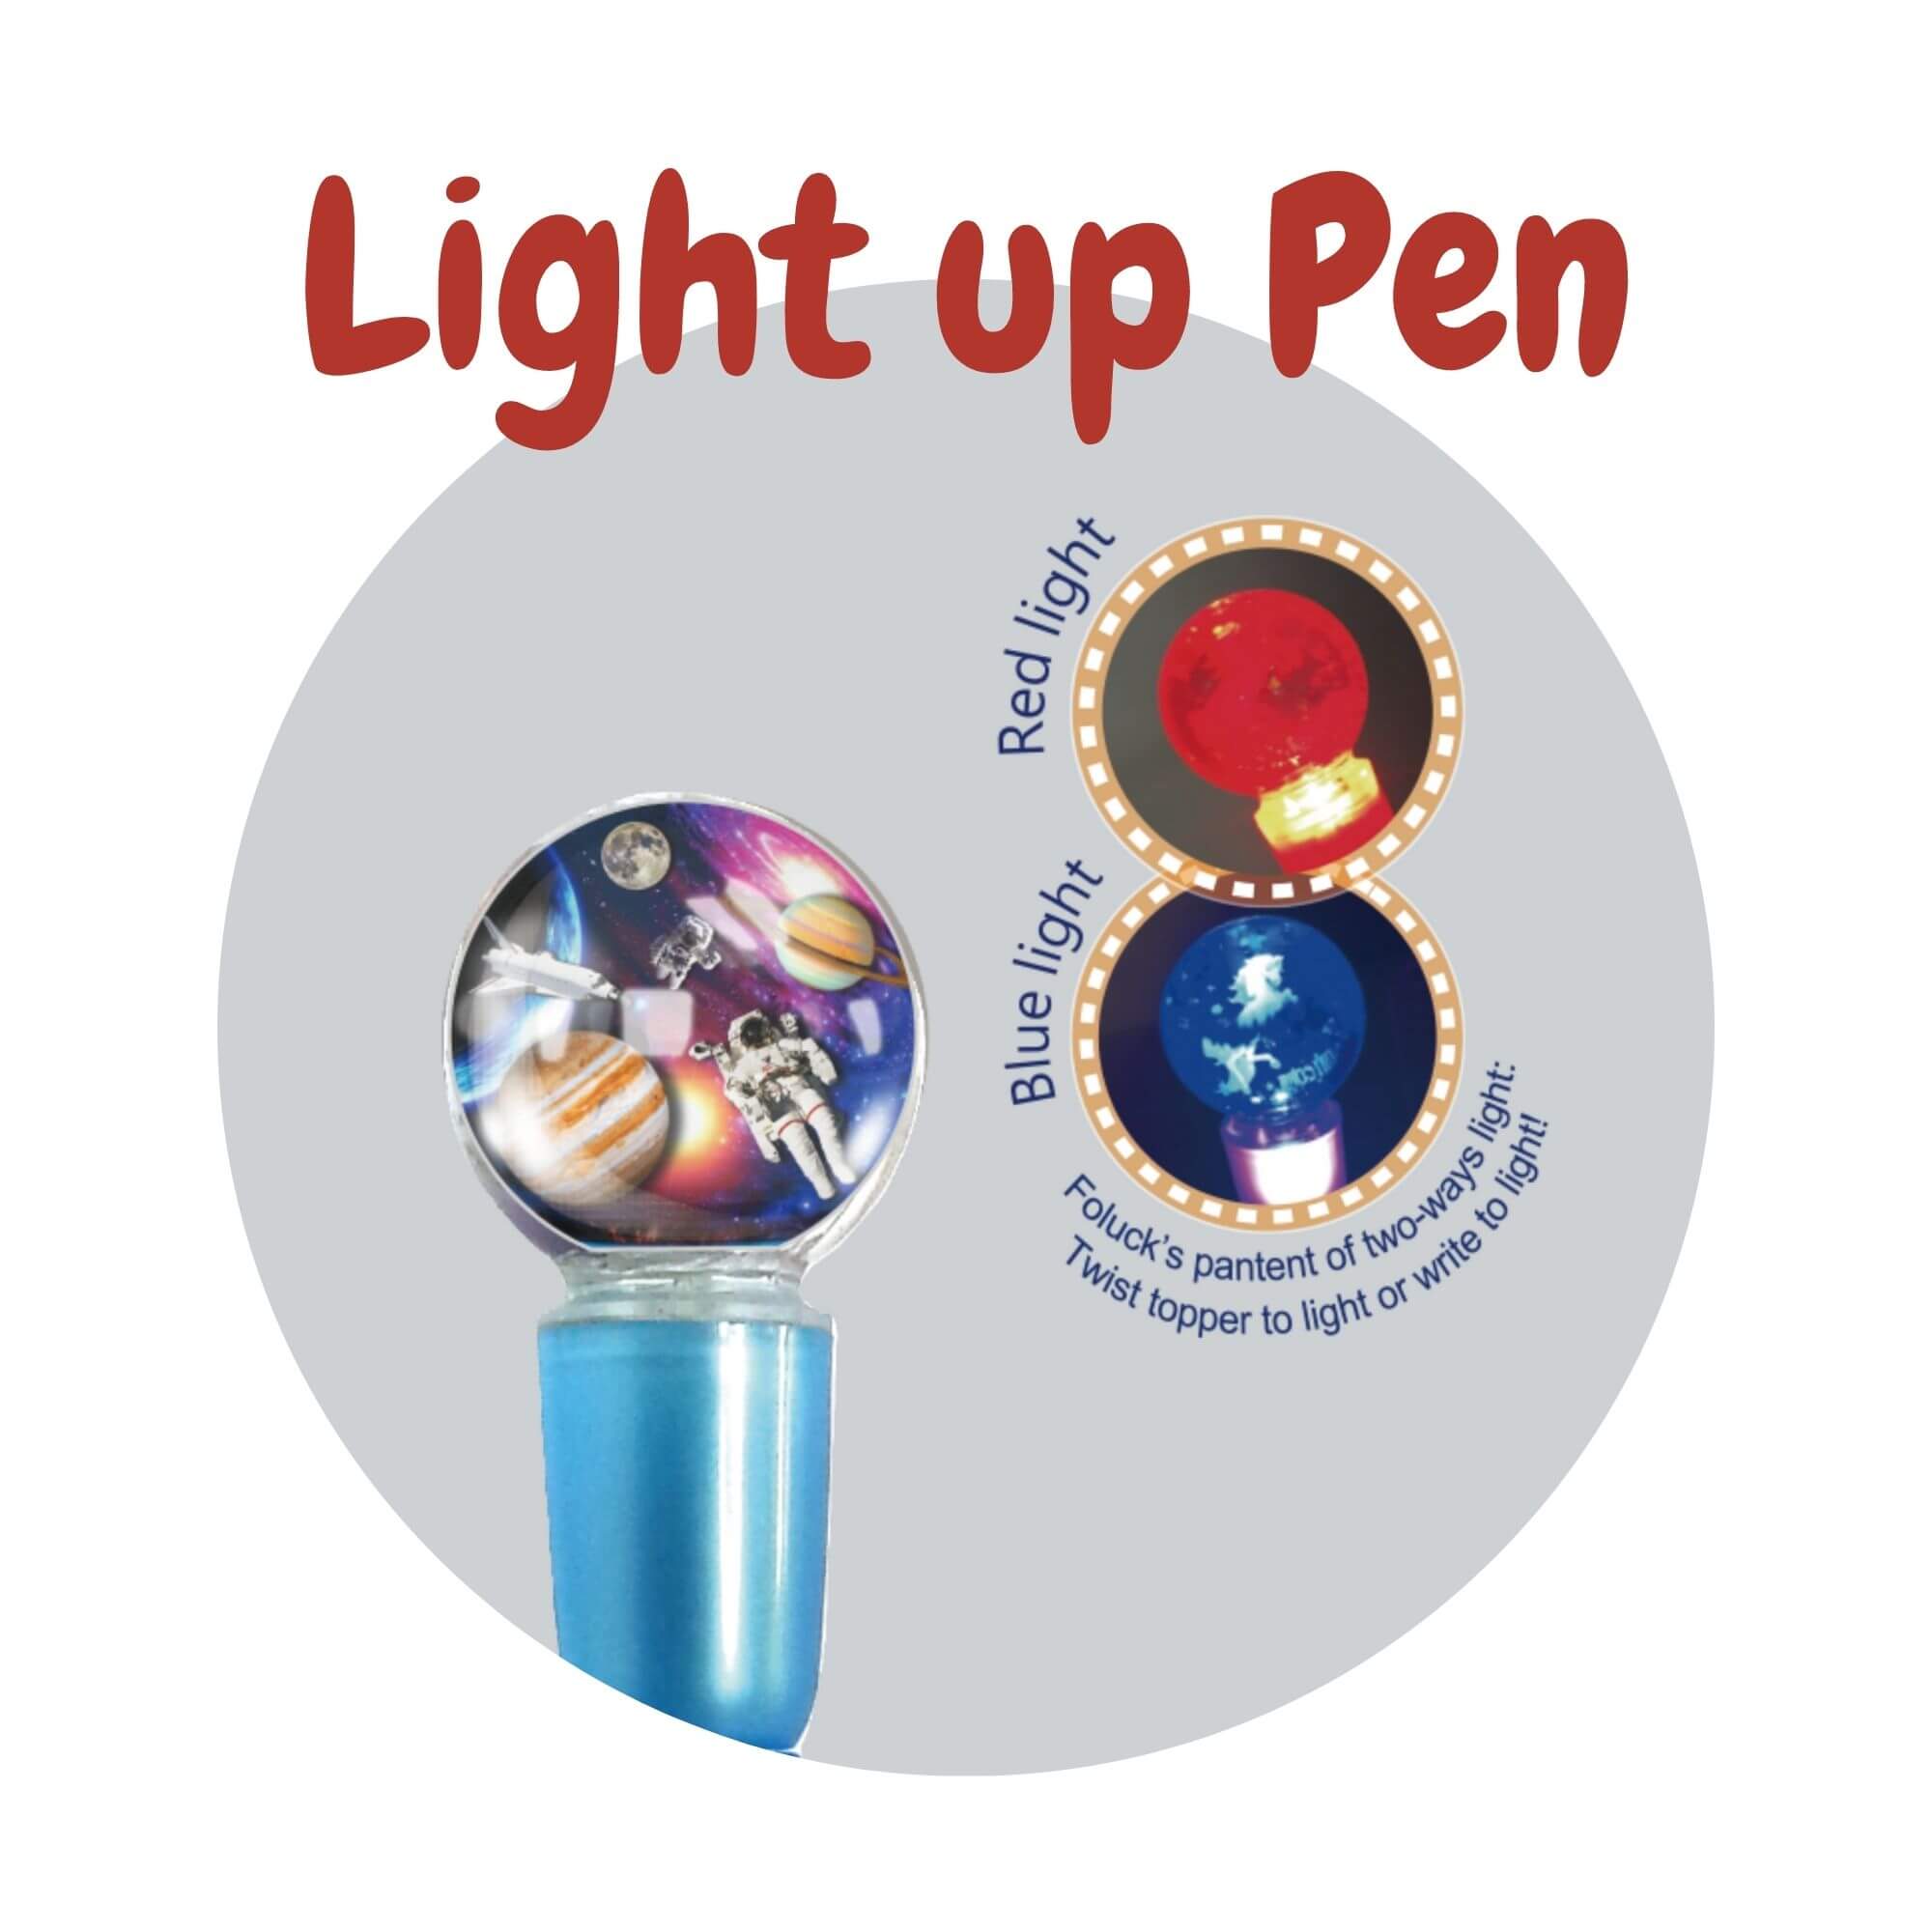 Light up Pen